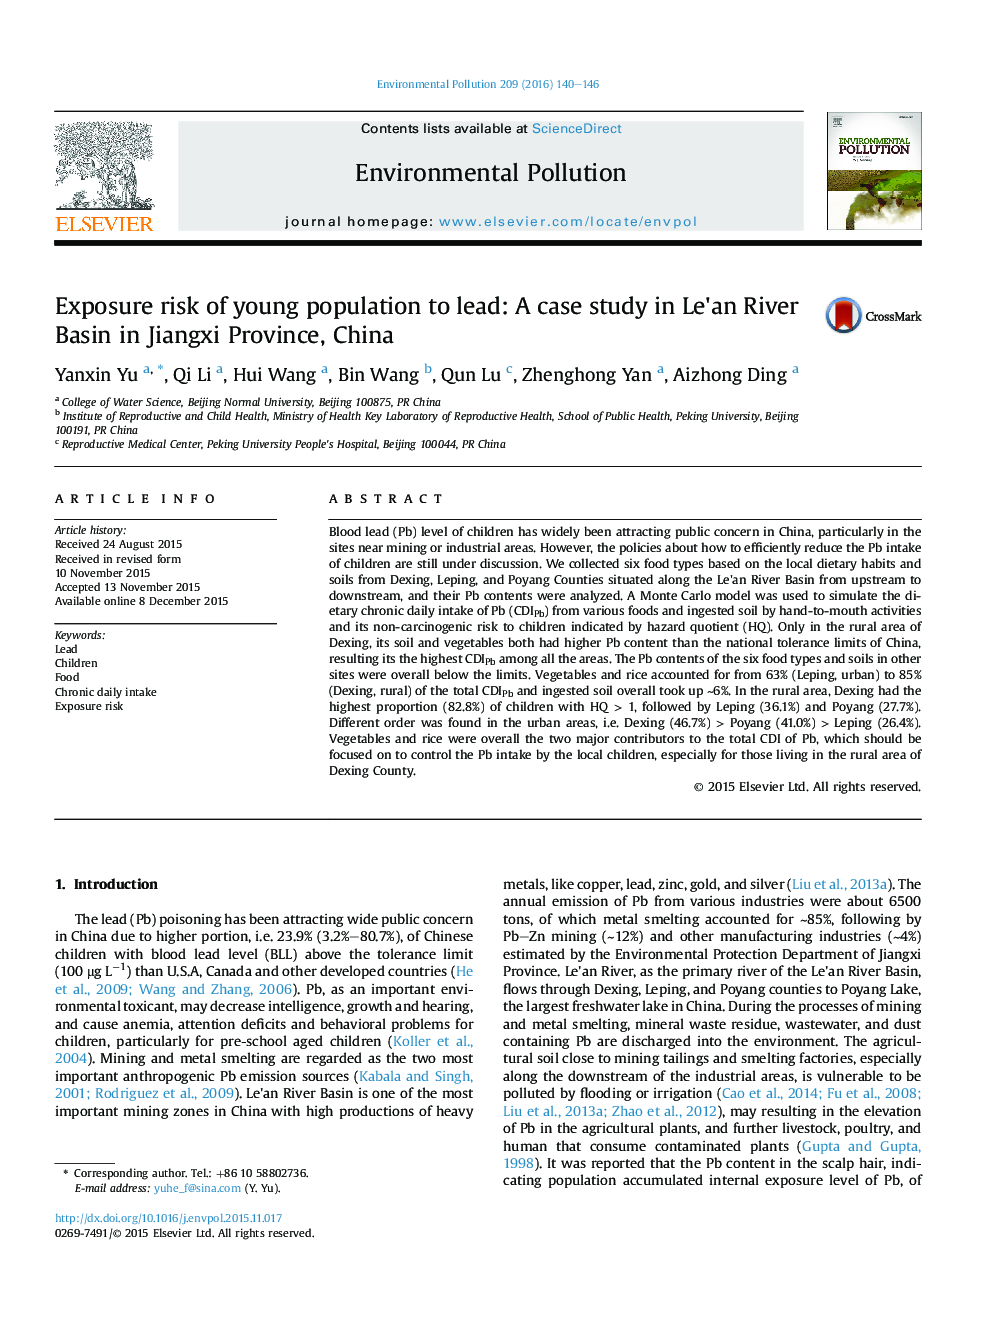 خطر مواجهه جمعیت جوان با سرب: یک مطالعه موردی در حوضه رودخانه Le'an در استان جیانگشی، چین